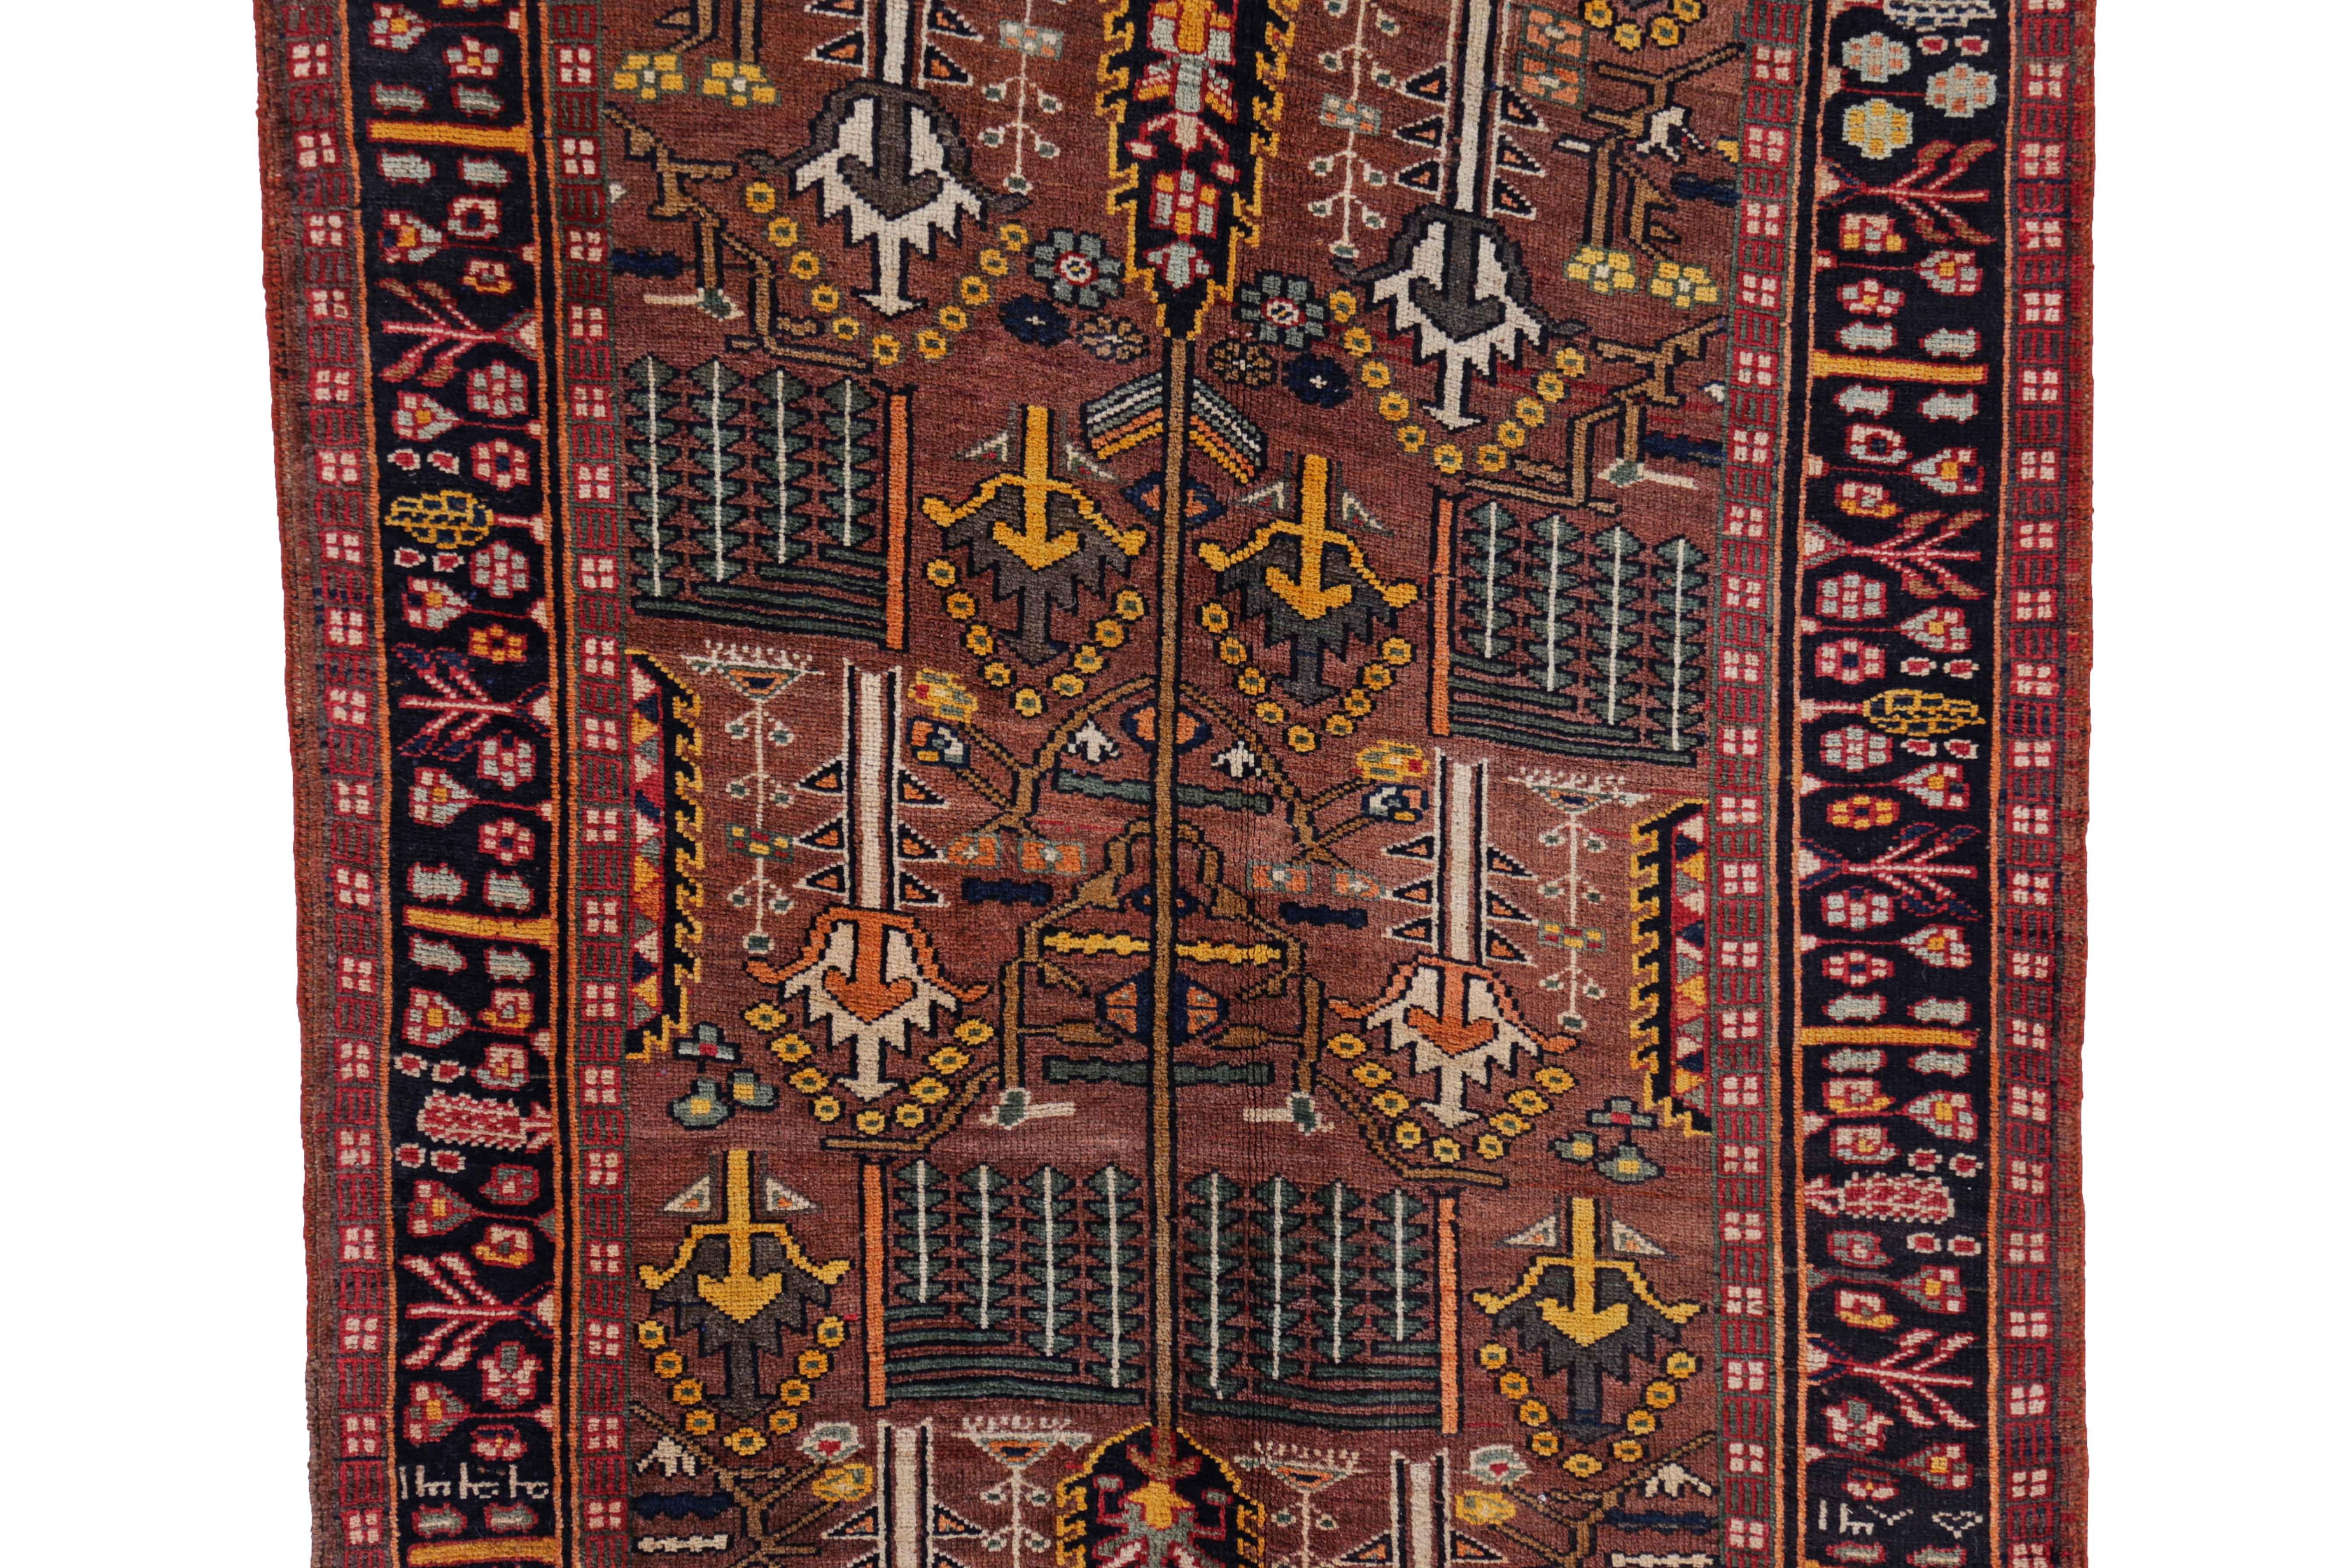 Other Antique Persian Runner Rug Bijar Design For Sale